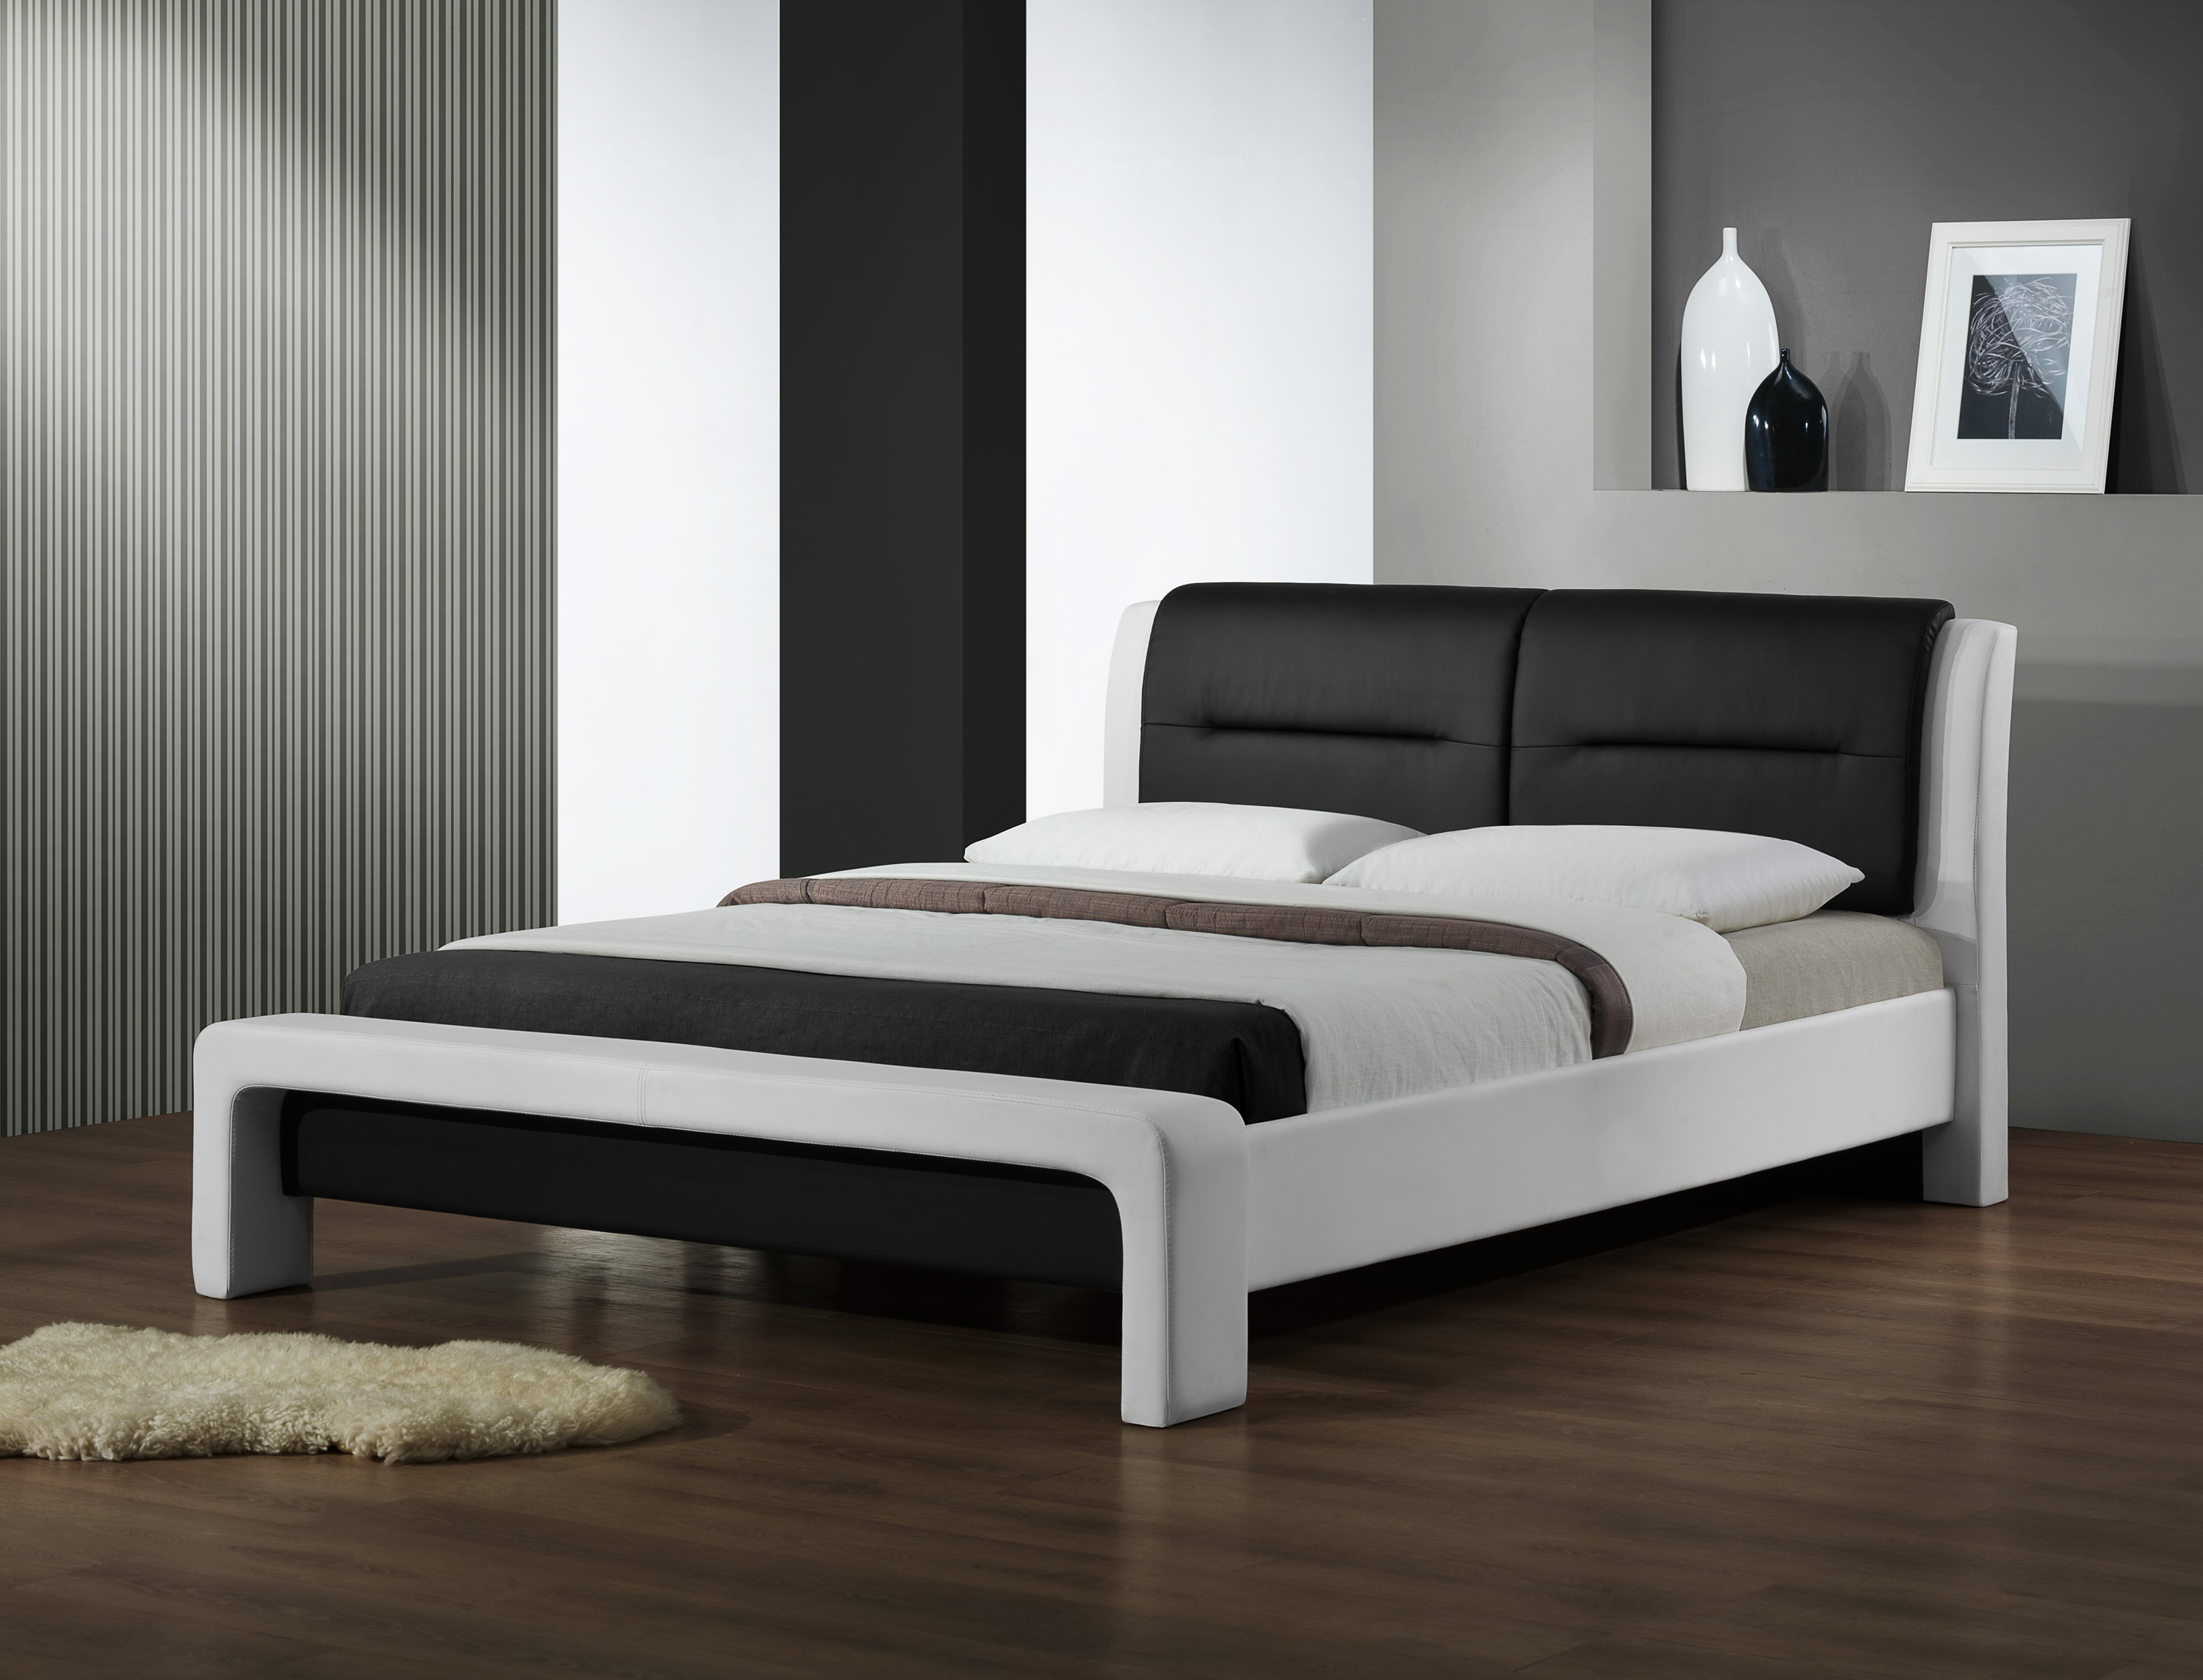 Łóżko sypialniane Cassandra 160X200 biało-czarne Łóżko sypialniane cassandra 160x200 biało-czarne